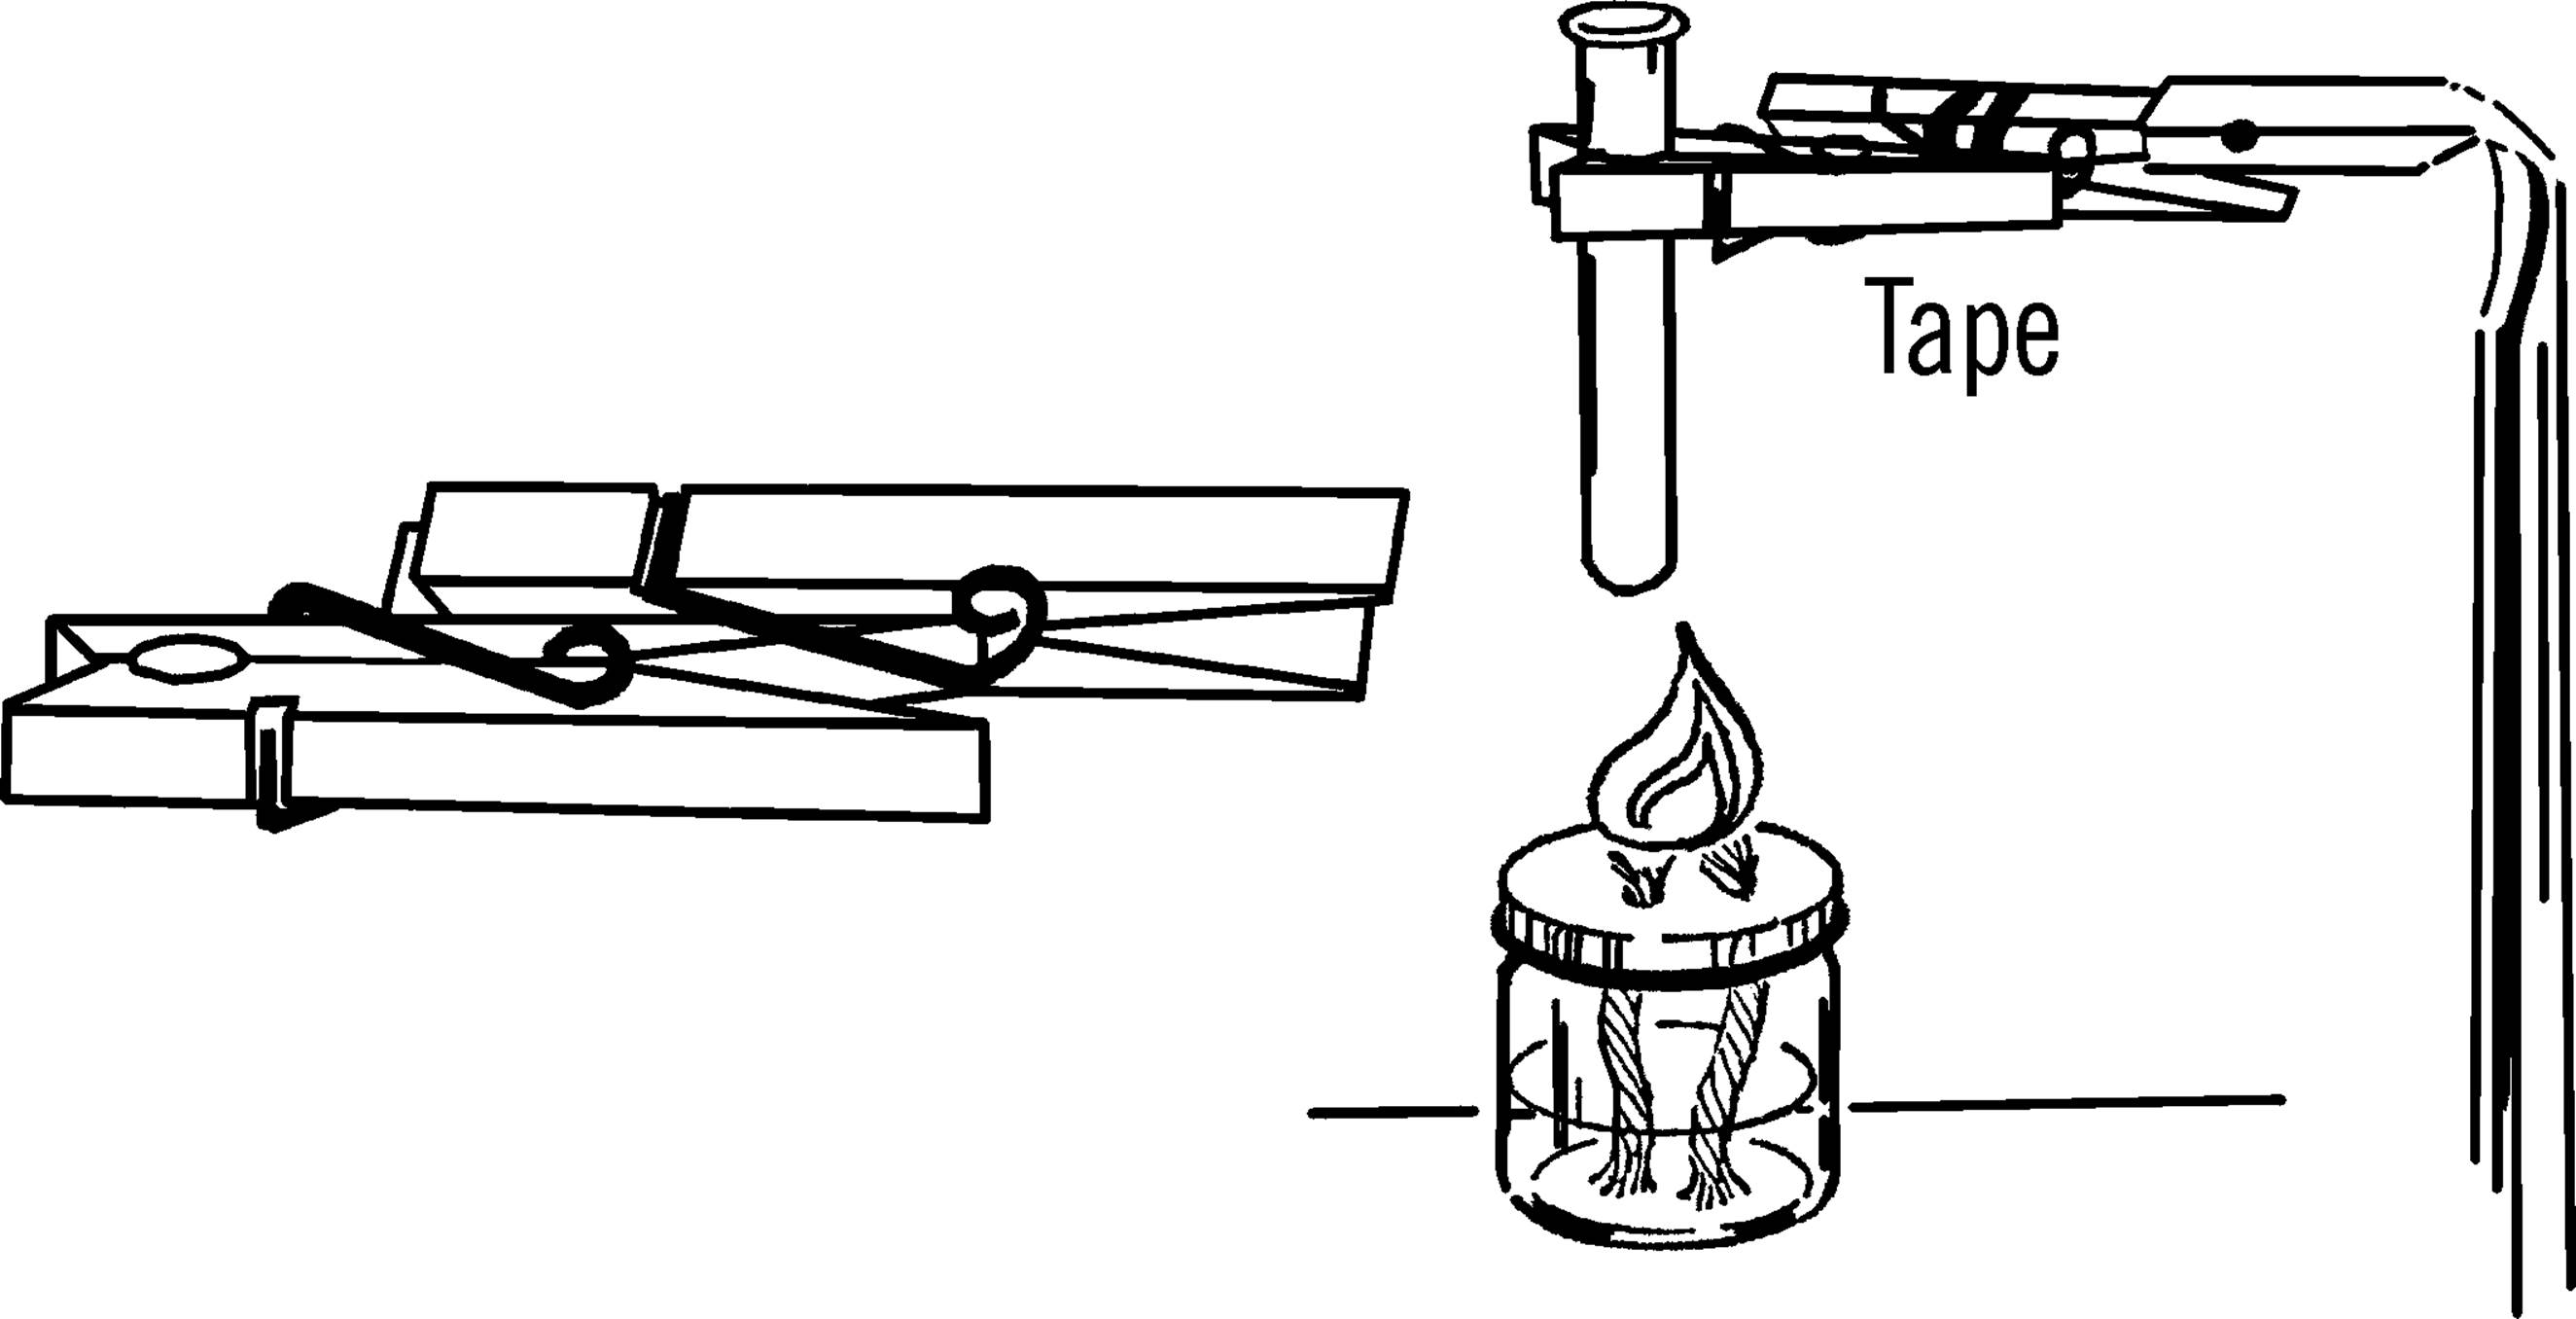 Burette clamp and test tube holder.